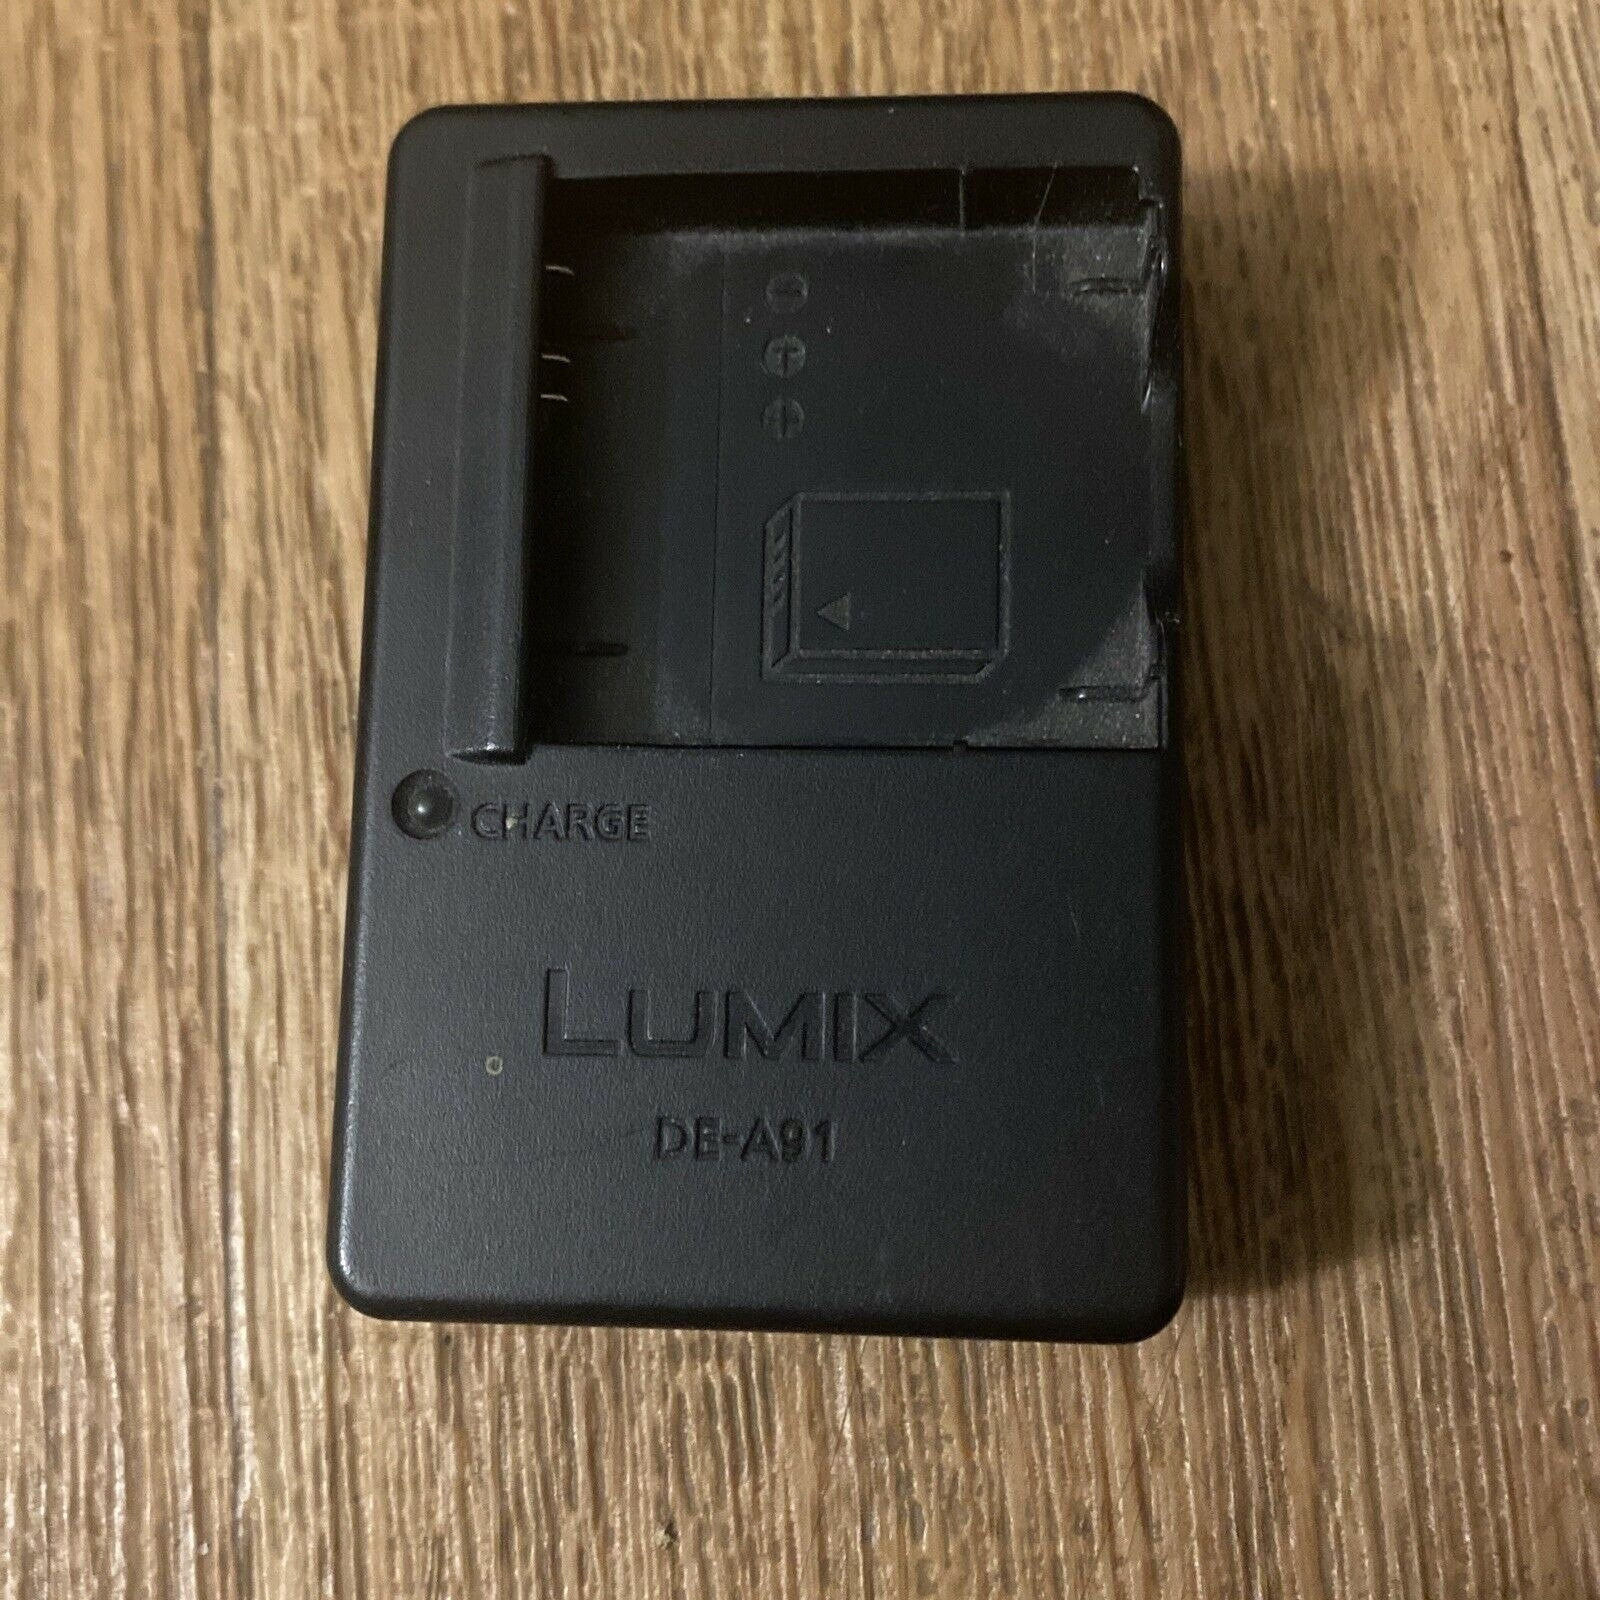 Panasonic Lumix DE-A91 Camera Battery Charger DE-A91B